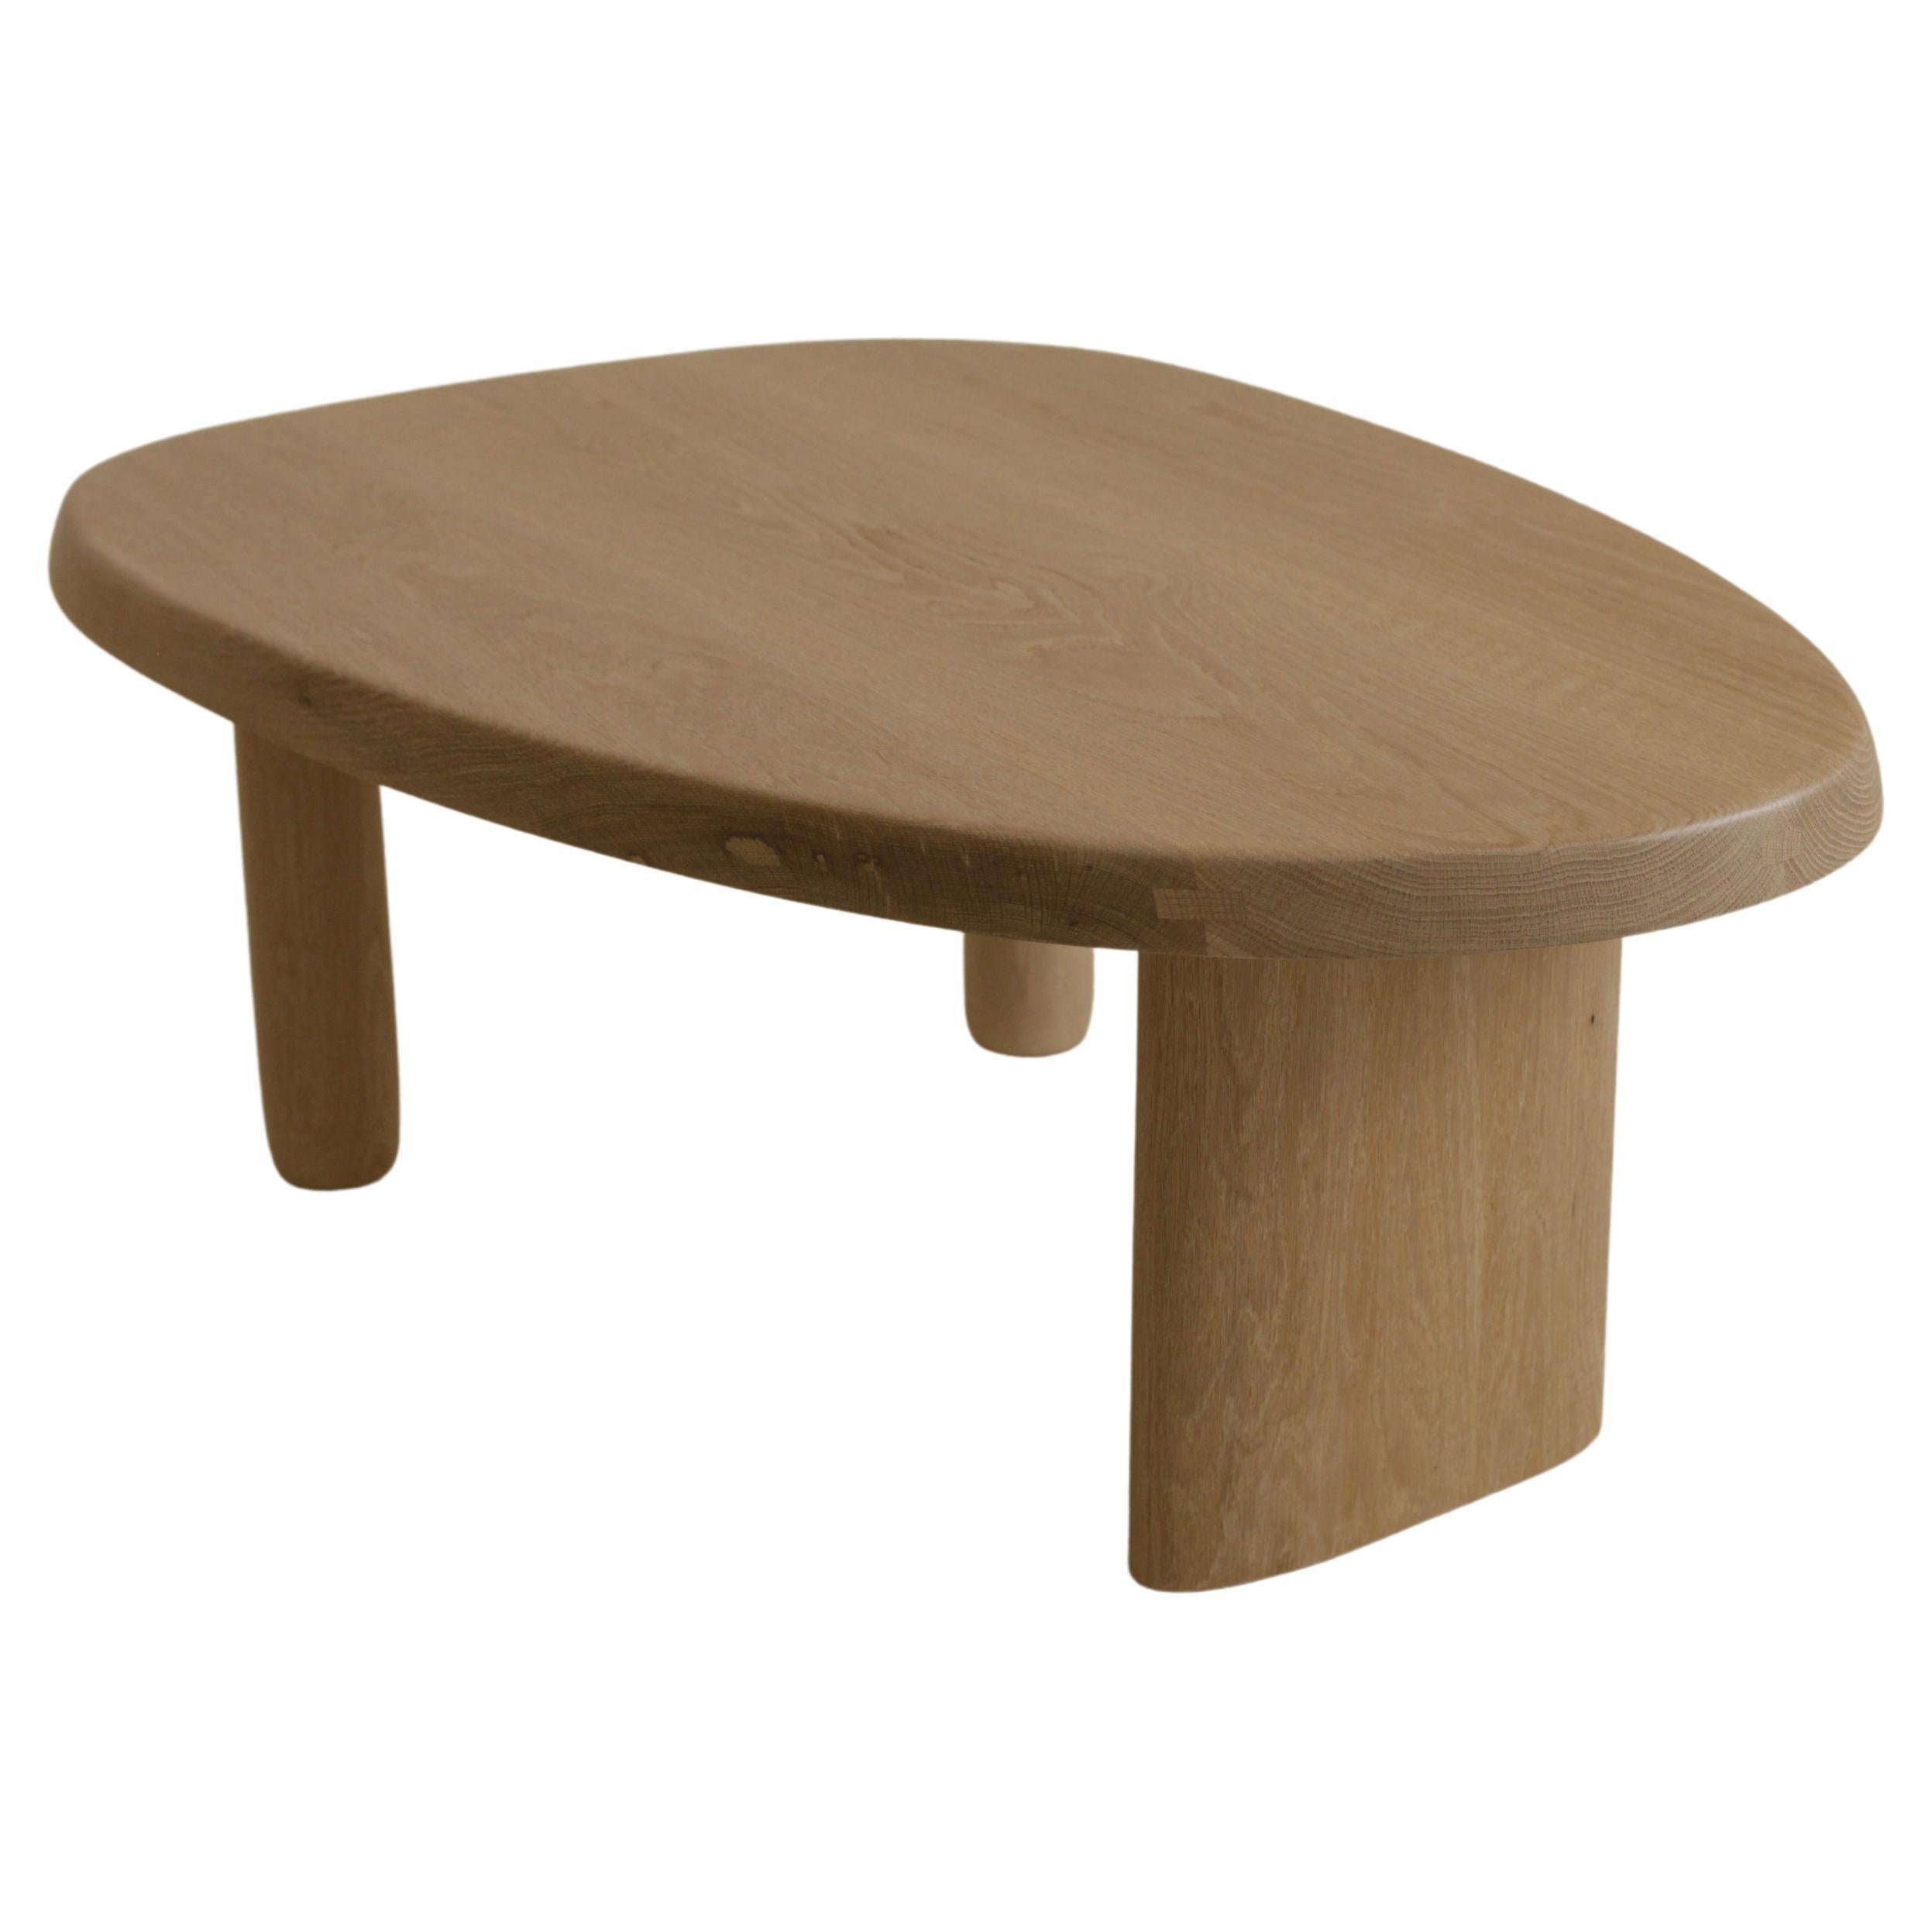 Cette table basse en chêne blanc inspirée par Charlotte Perriand s'inspire de sa table à manger emblématique 'Forme Libre'. Nous avons créé une forme libre pour le haut avec des courbes douces, puis nous avons coupé à la main le détail du bord de